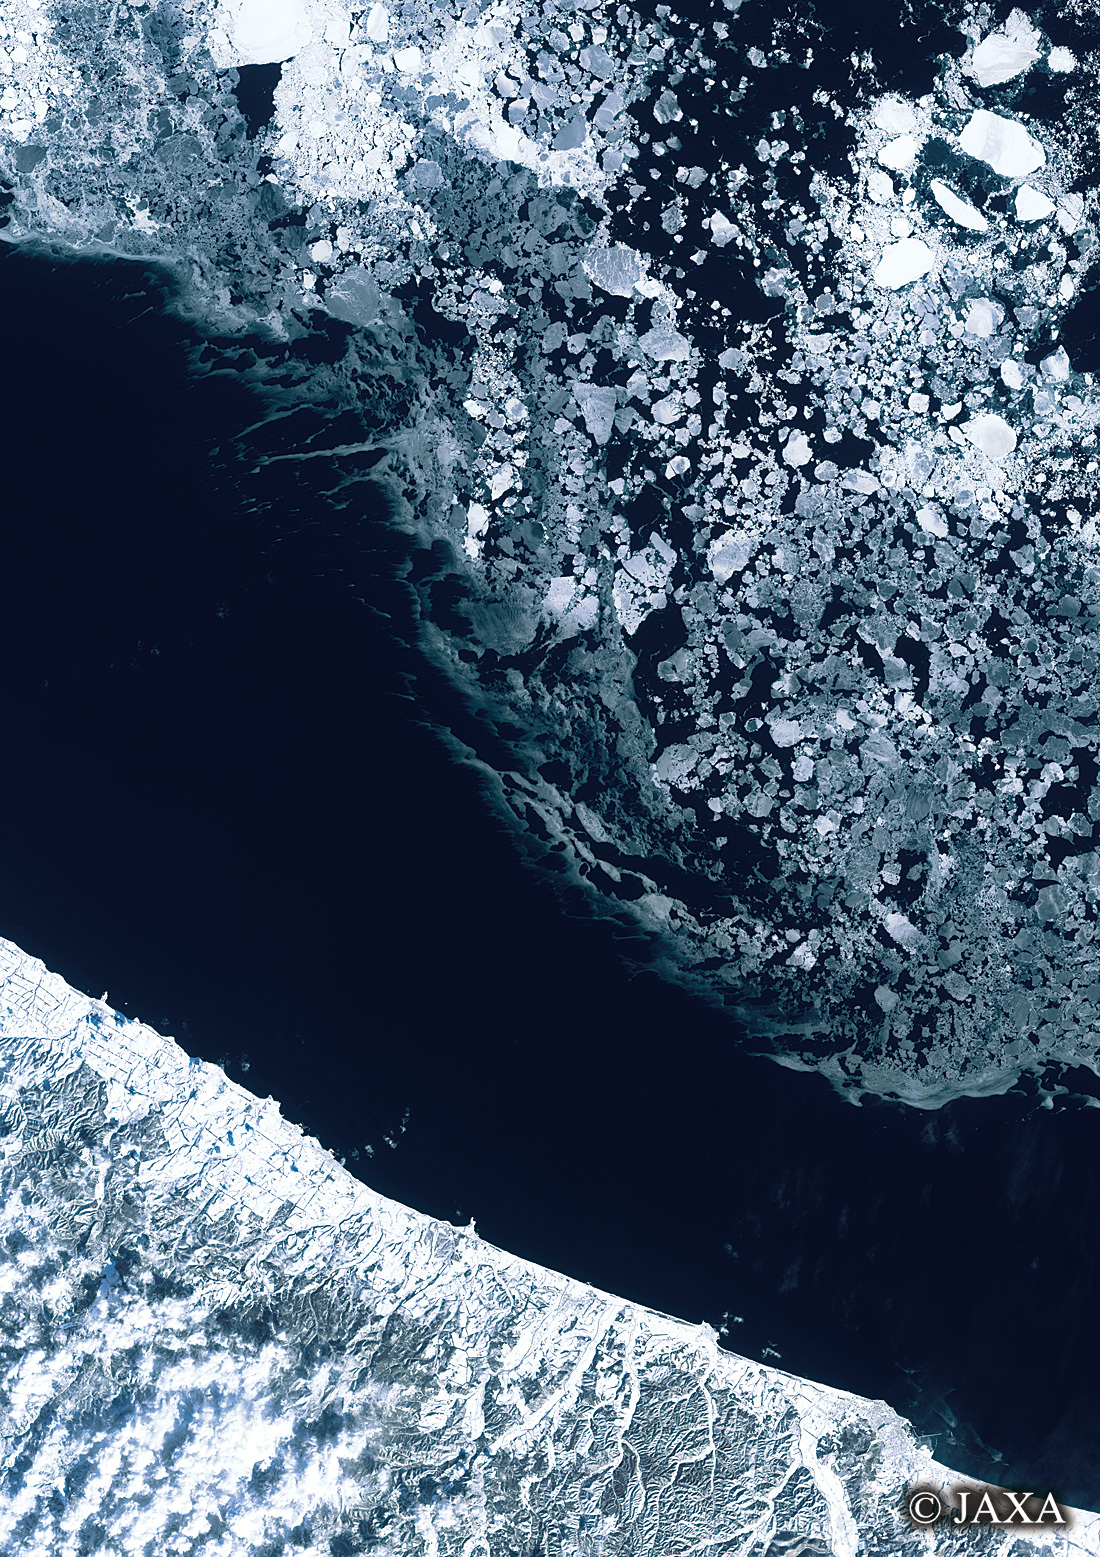 だいちから見た日本の都市 オホーツク海の流氷:衛星画像